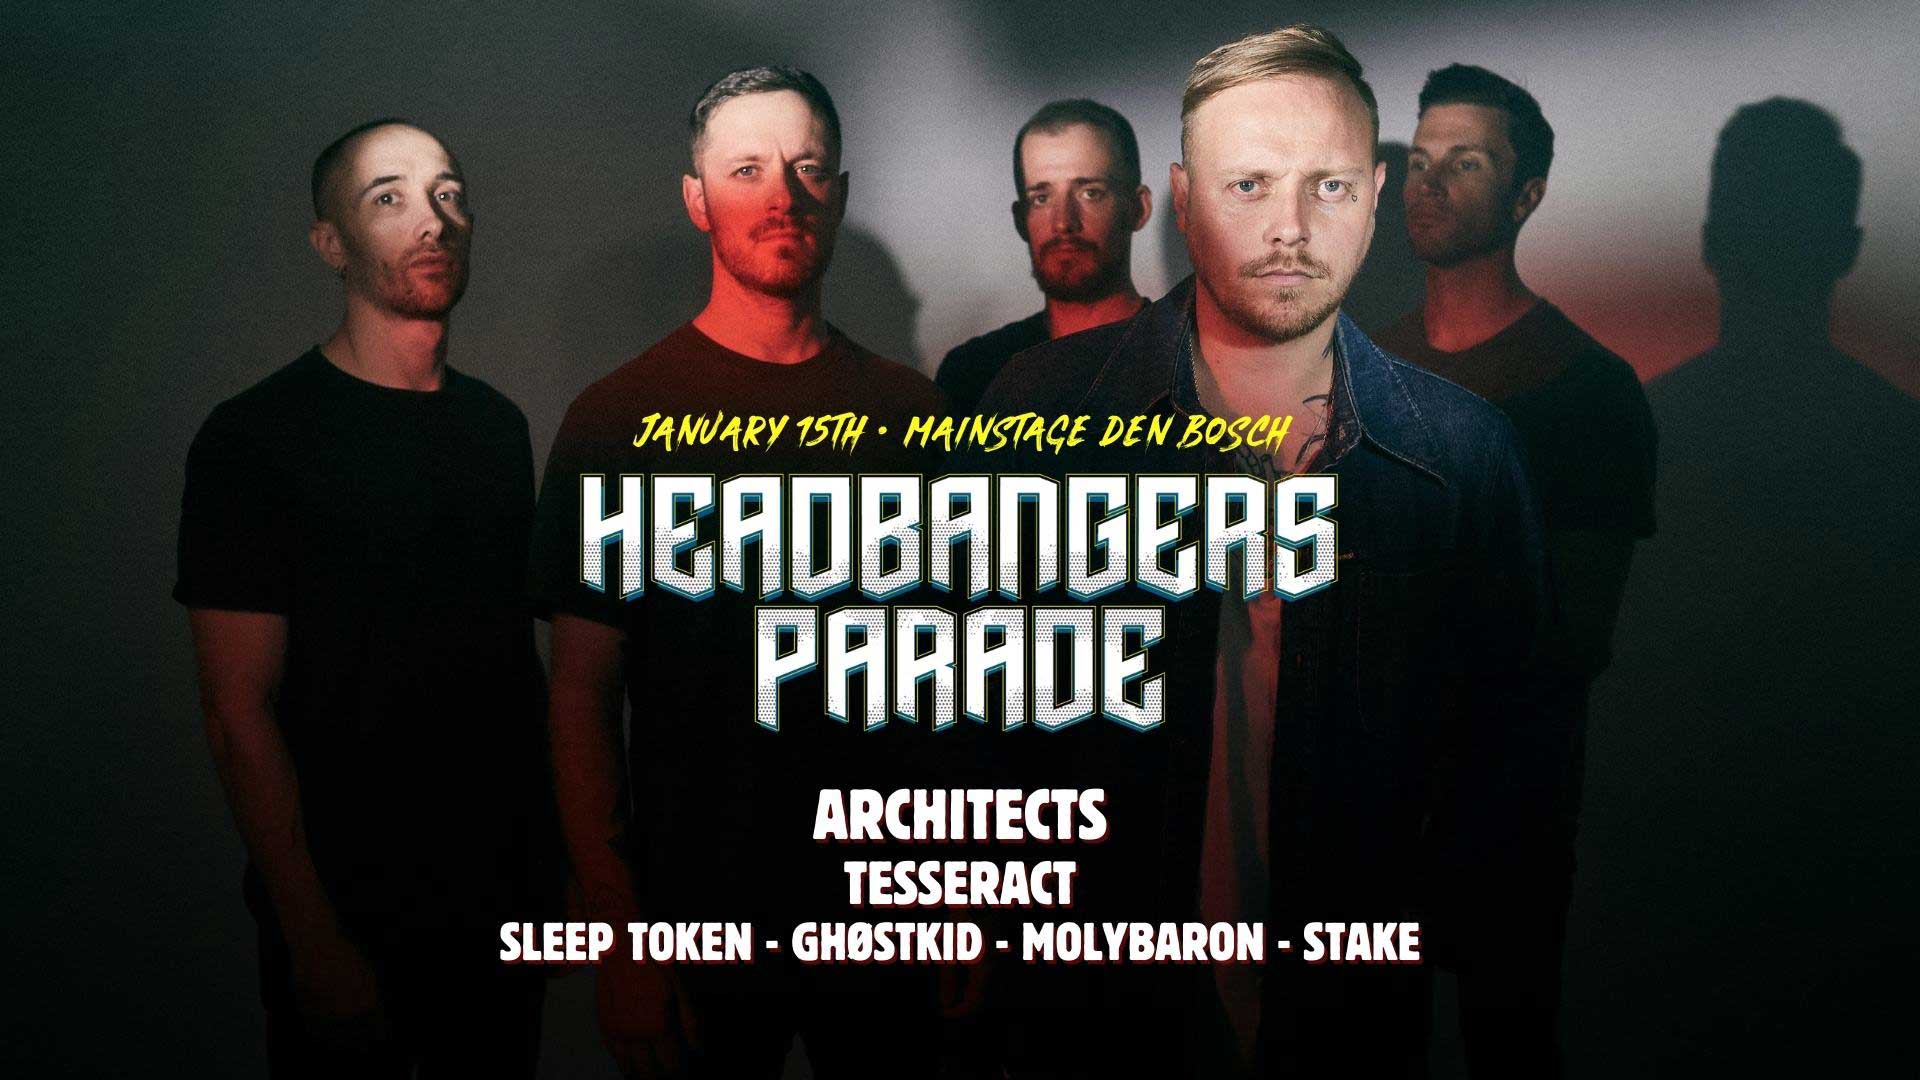 Headbanger’s Parade #1 @ Mainstage Den Bosch – NL